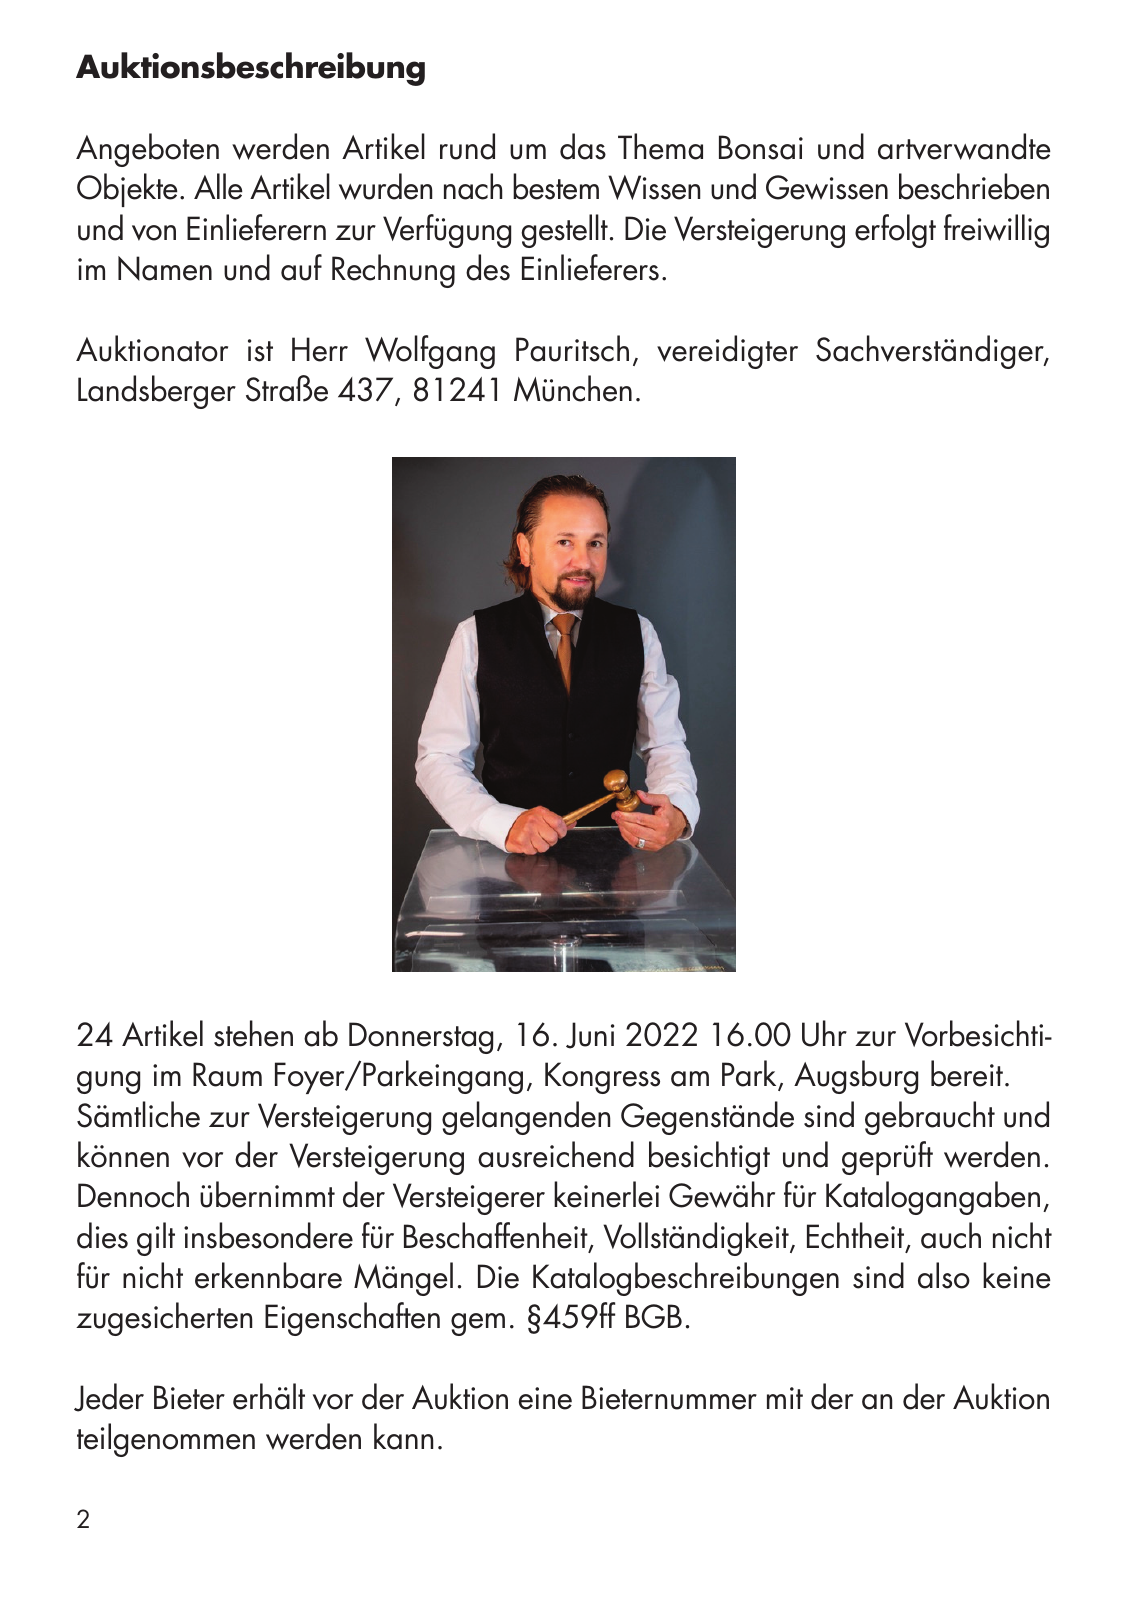 Vorschau Auktionskatalog Augsburg 2022 Seite 2